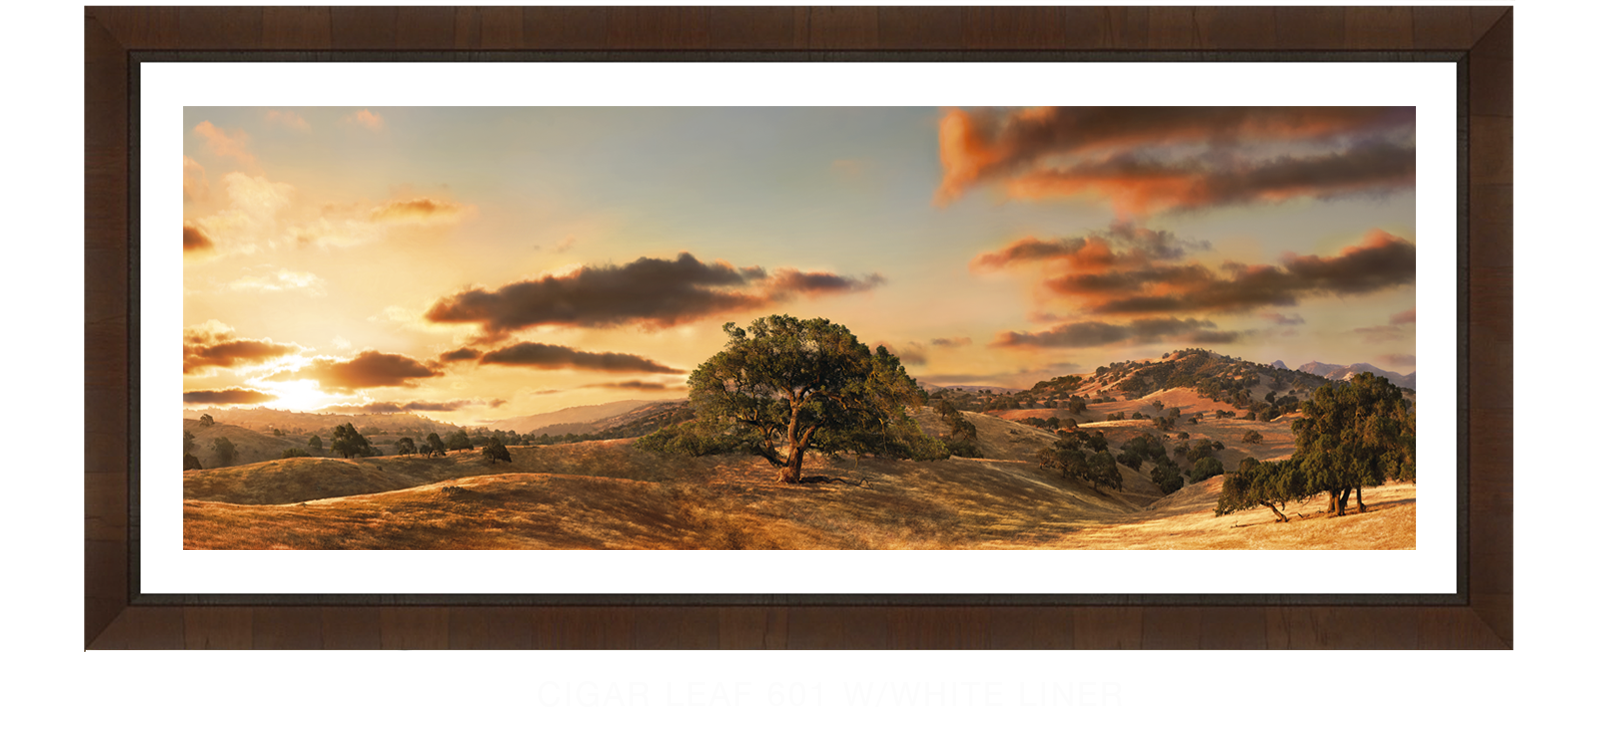 30SOAKS Cigar Leaf 601 w_Wht Liner T